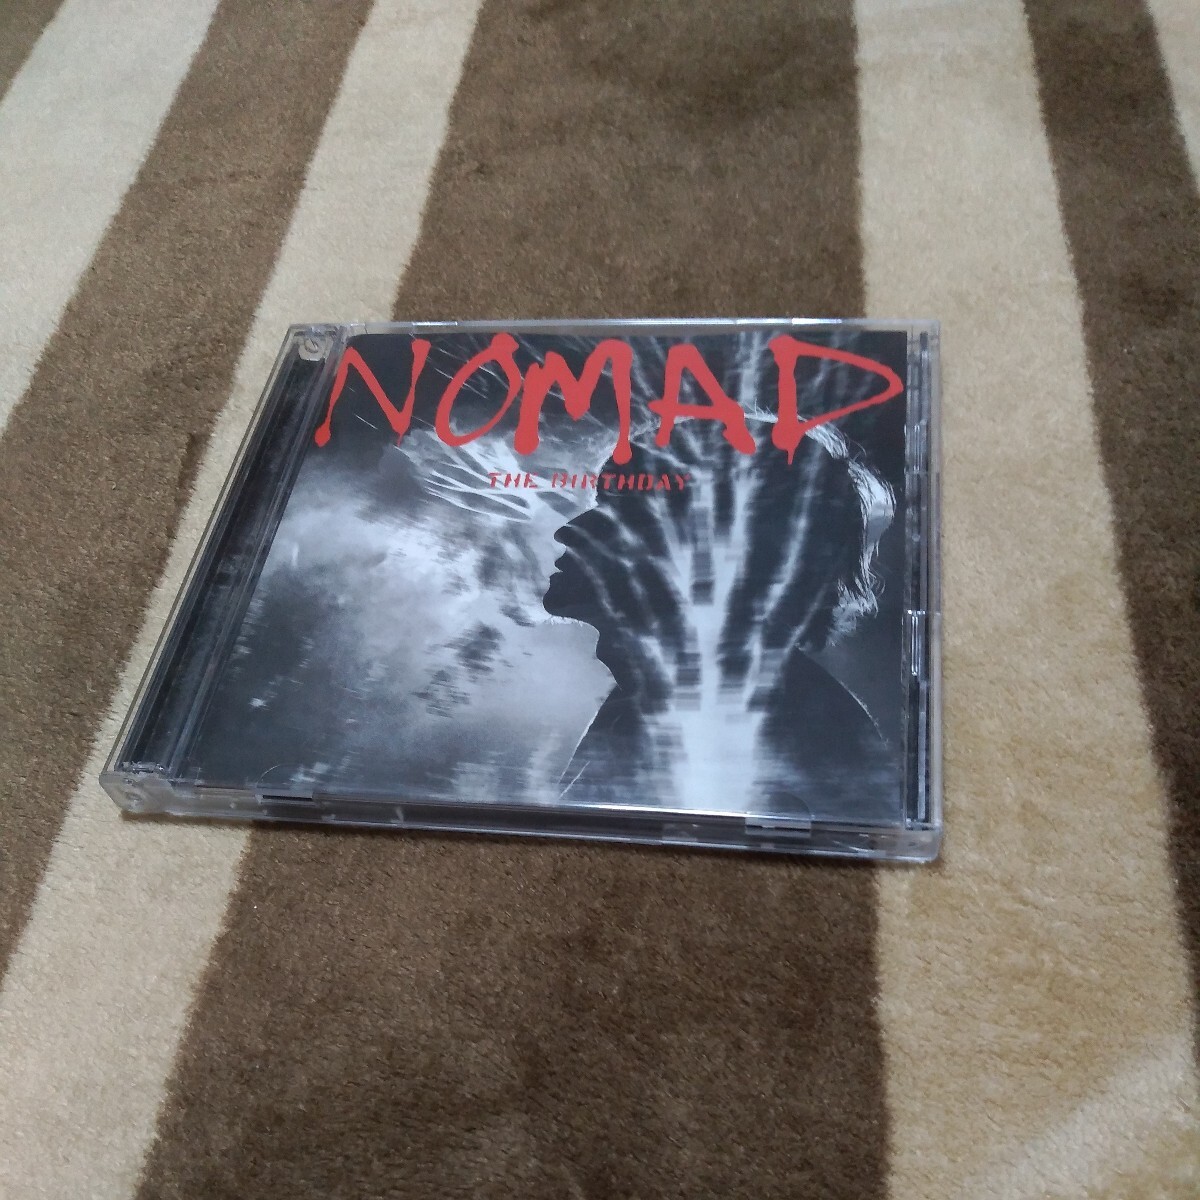 初回限定盤 The Birthday 「NOMAD」 SHM-CD+blu-ray 2枚組 チバユウスケ ミッシェルガンエレファント THEE MICHELLE GUN ELEPHANT _画像1